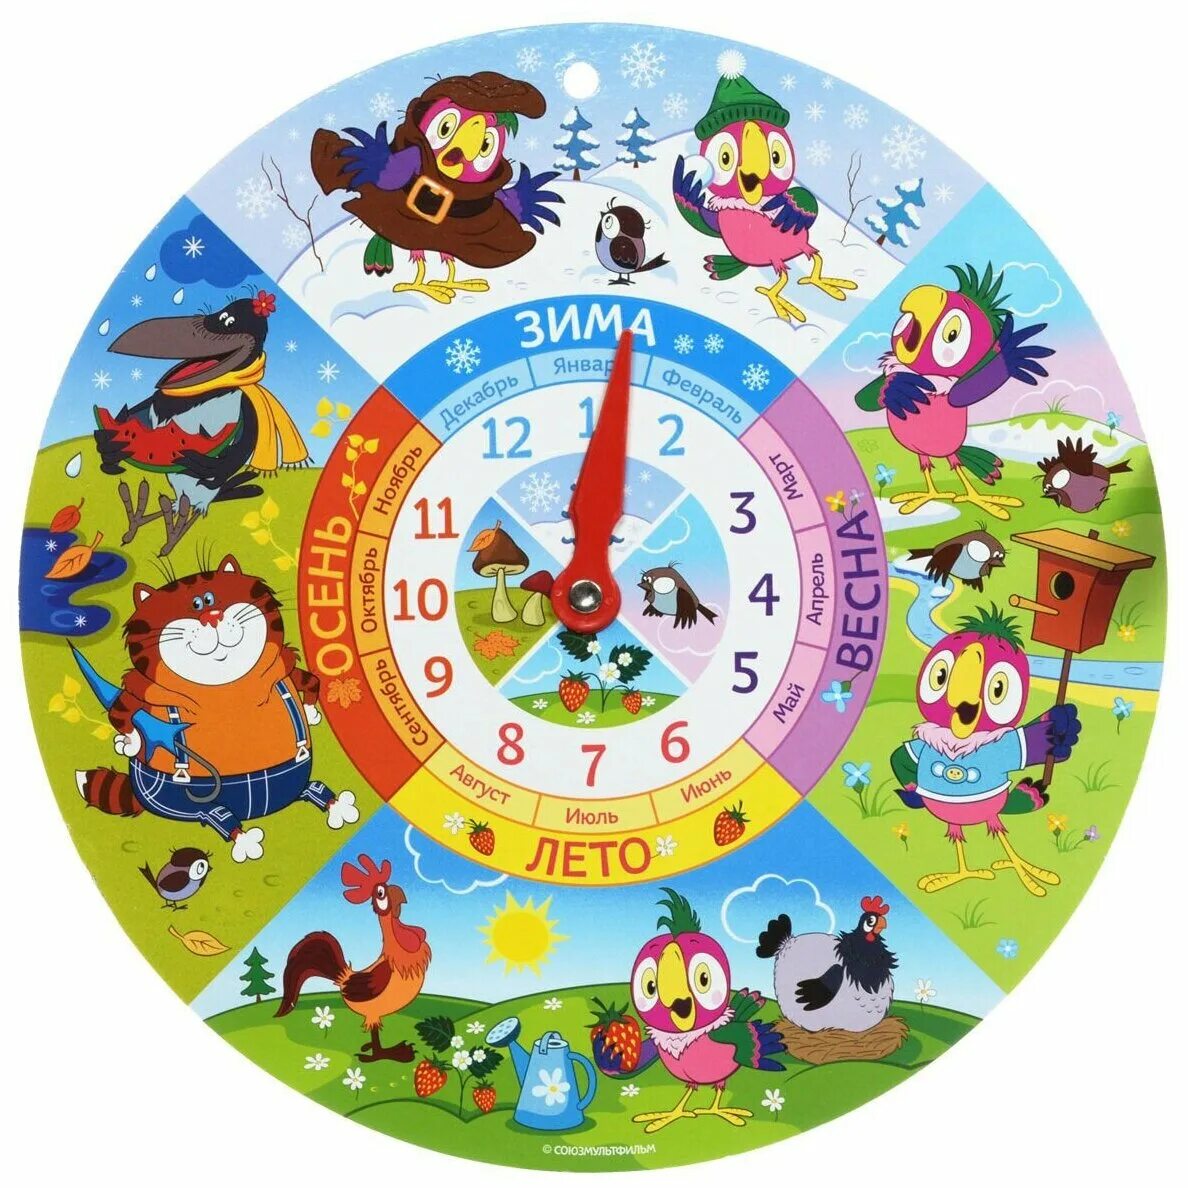 Часы русский стиль Союзмультфильм "попугай Кеша" 03095/52095. Часы обучающие для детей. Часы для детского сада обучающие. Часы детские для детского сада.